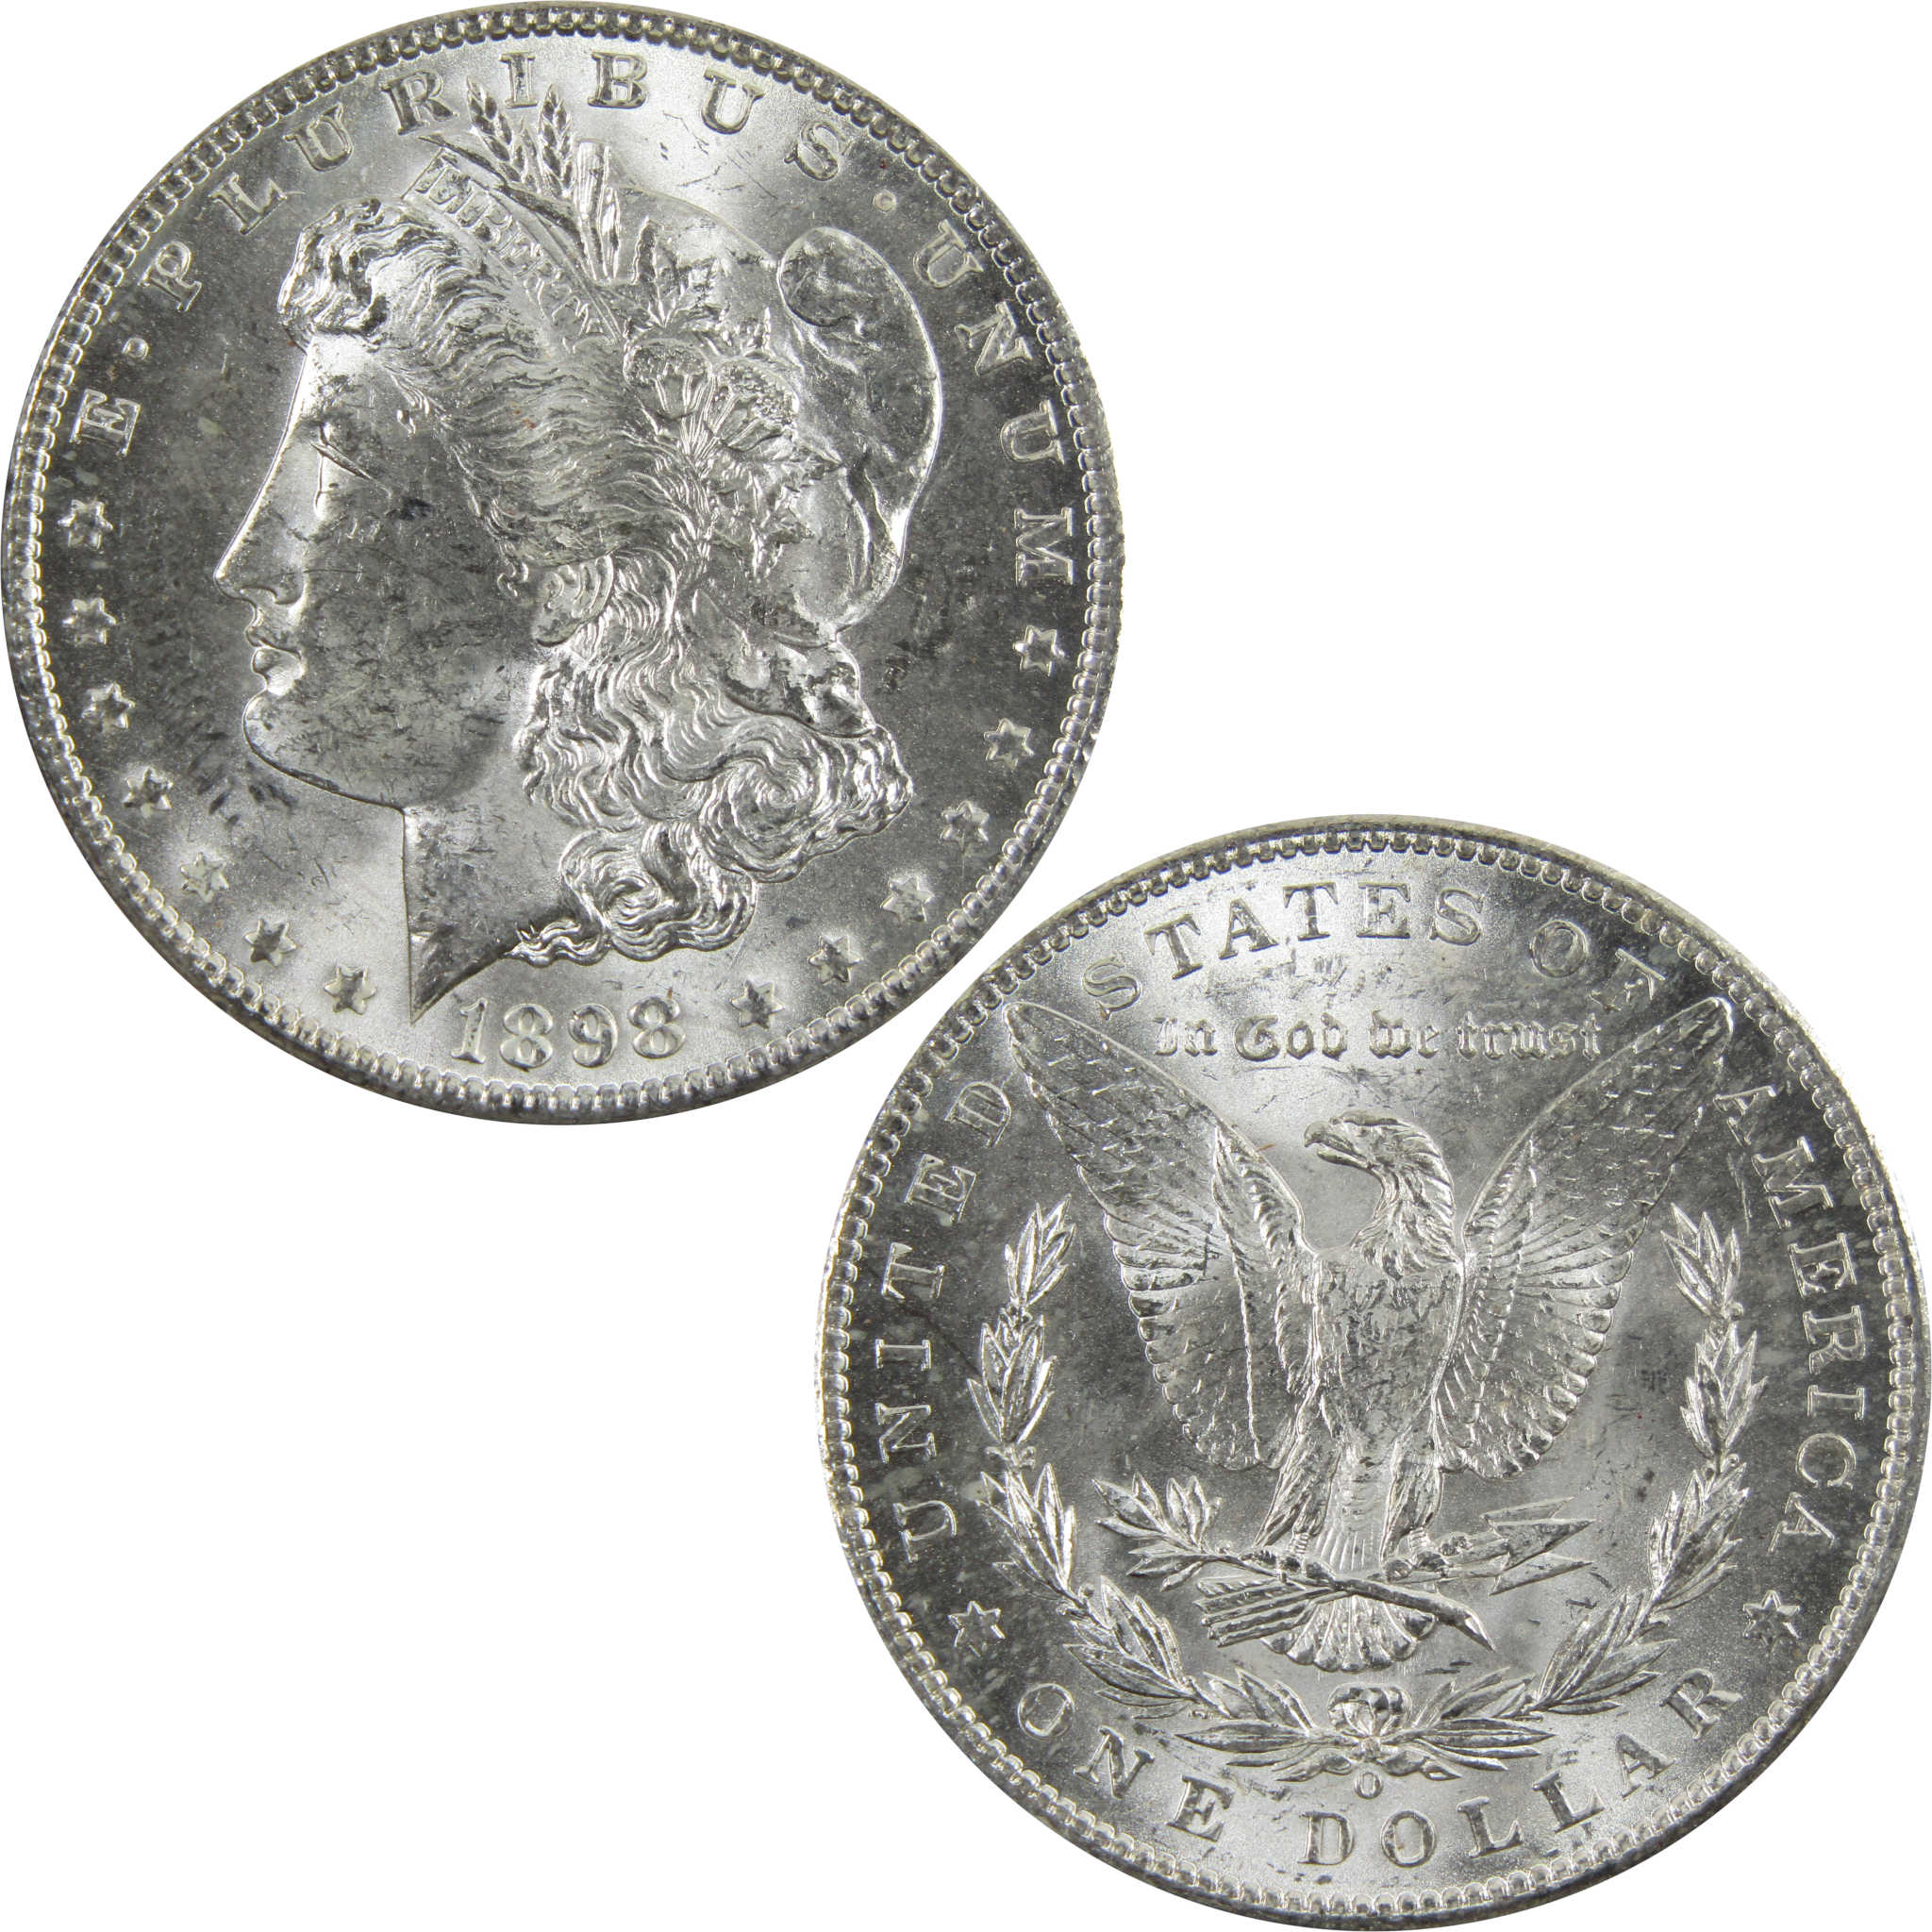 1898 O Morgan Dollar BU Uncirculated 90% Silver $1 Coin SKU:I5201 - Morgan coin - Morgan silver dollar - Morgan silver dollar for sale - Profile Coins &amp; Collectibles